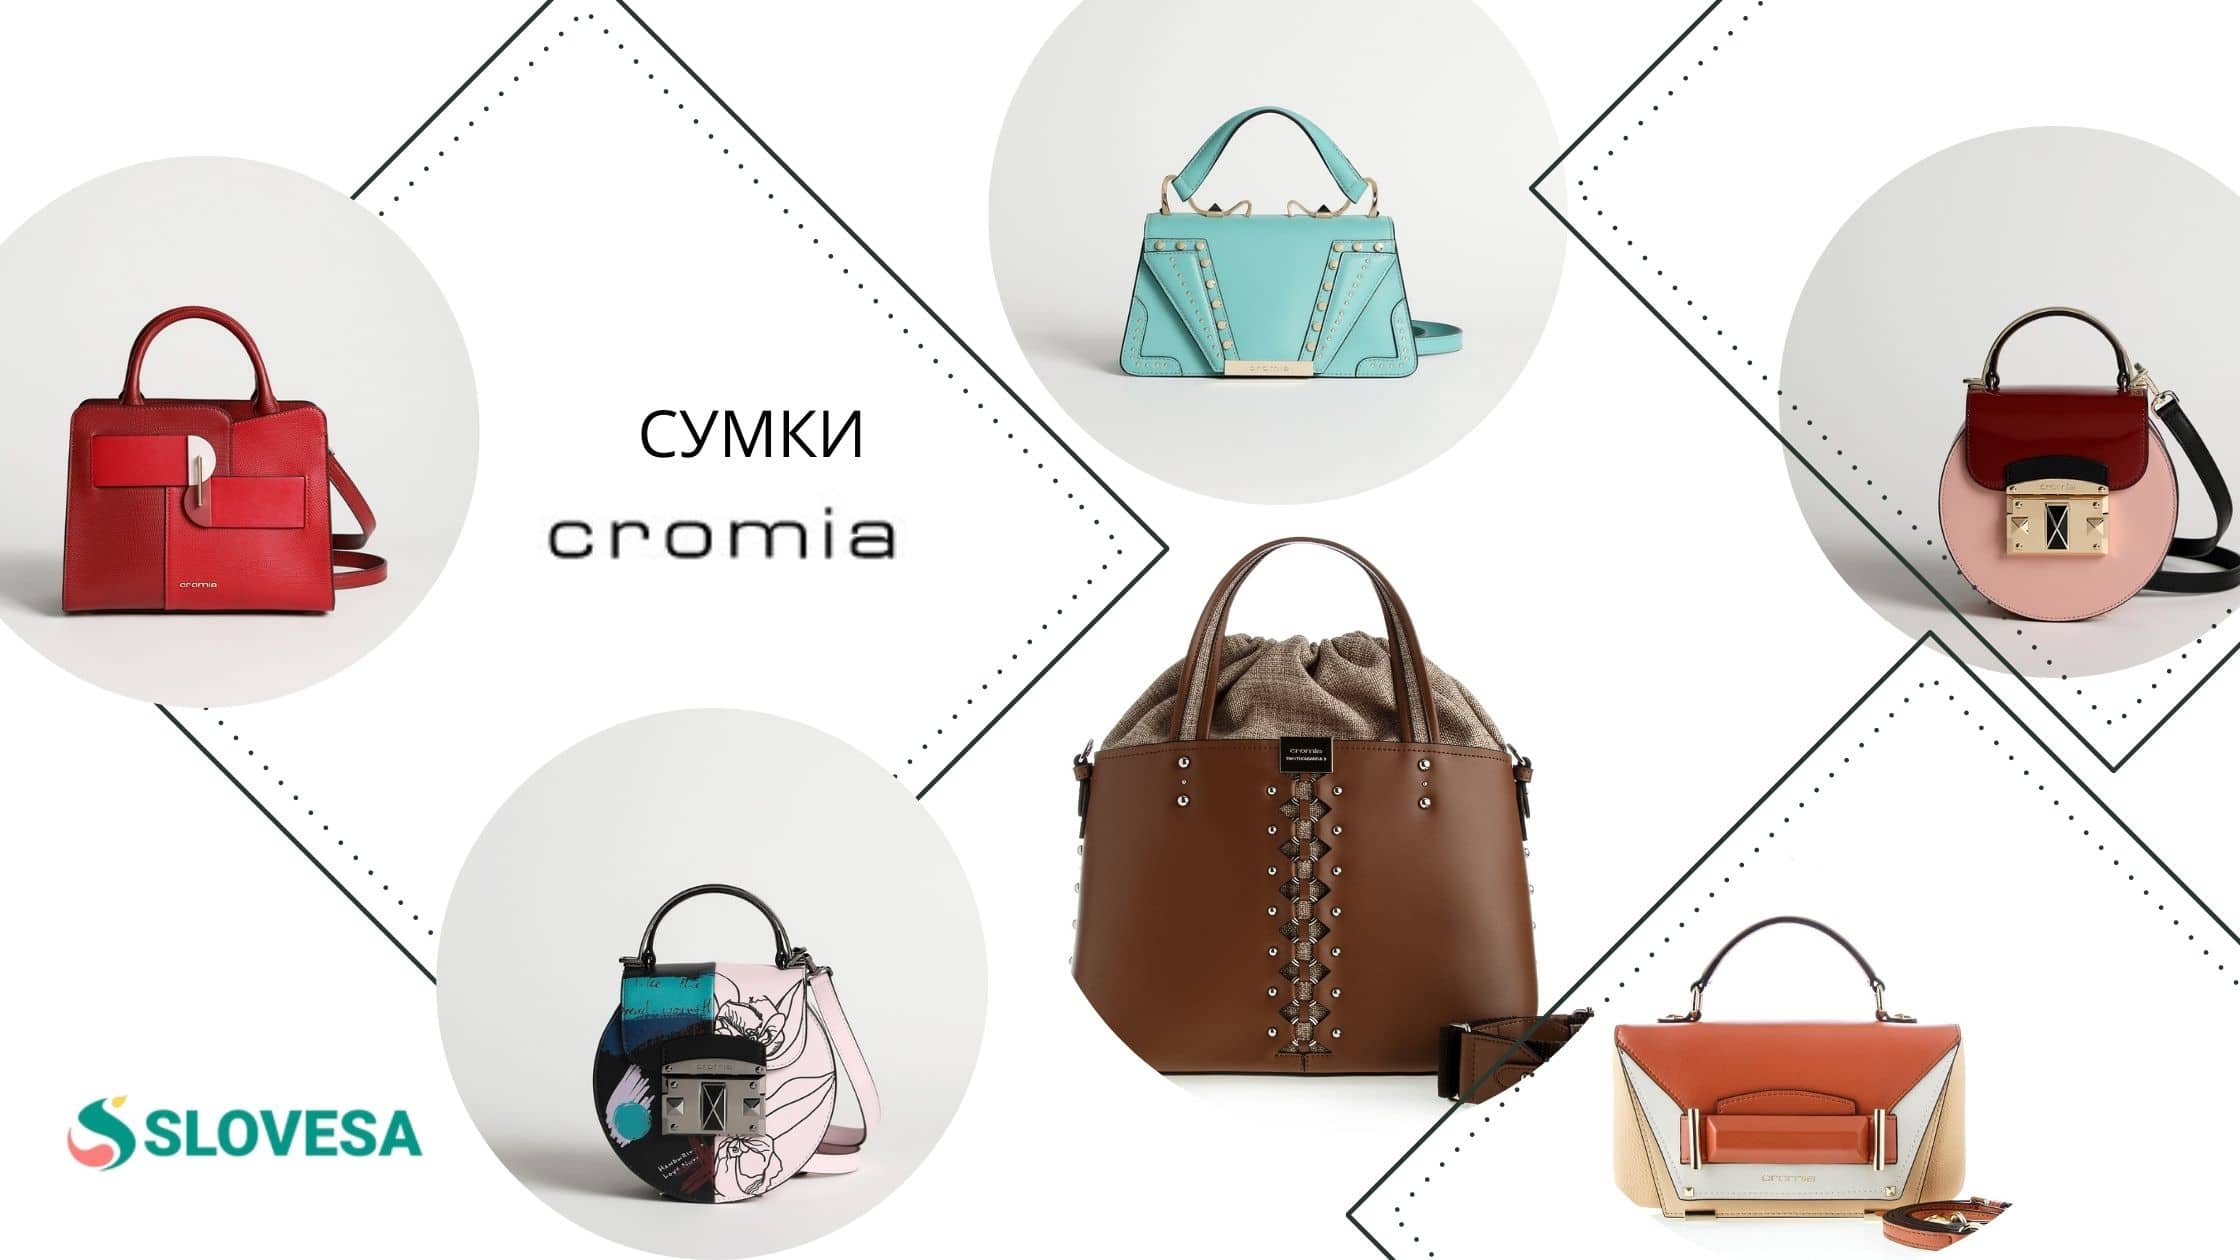 Бизнес и стиль неразлучны: сумки Cromia в бутике Privado